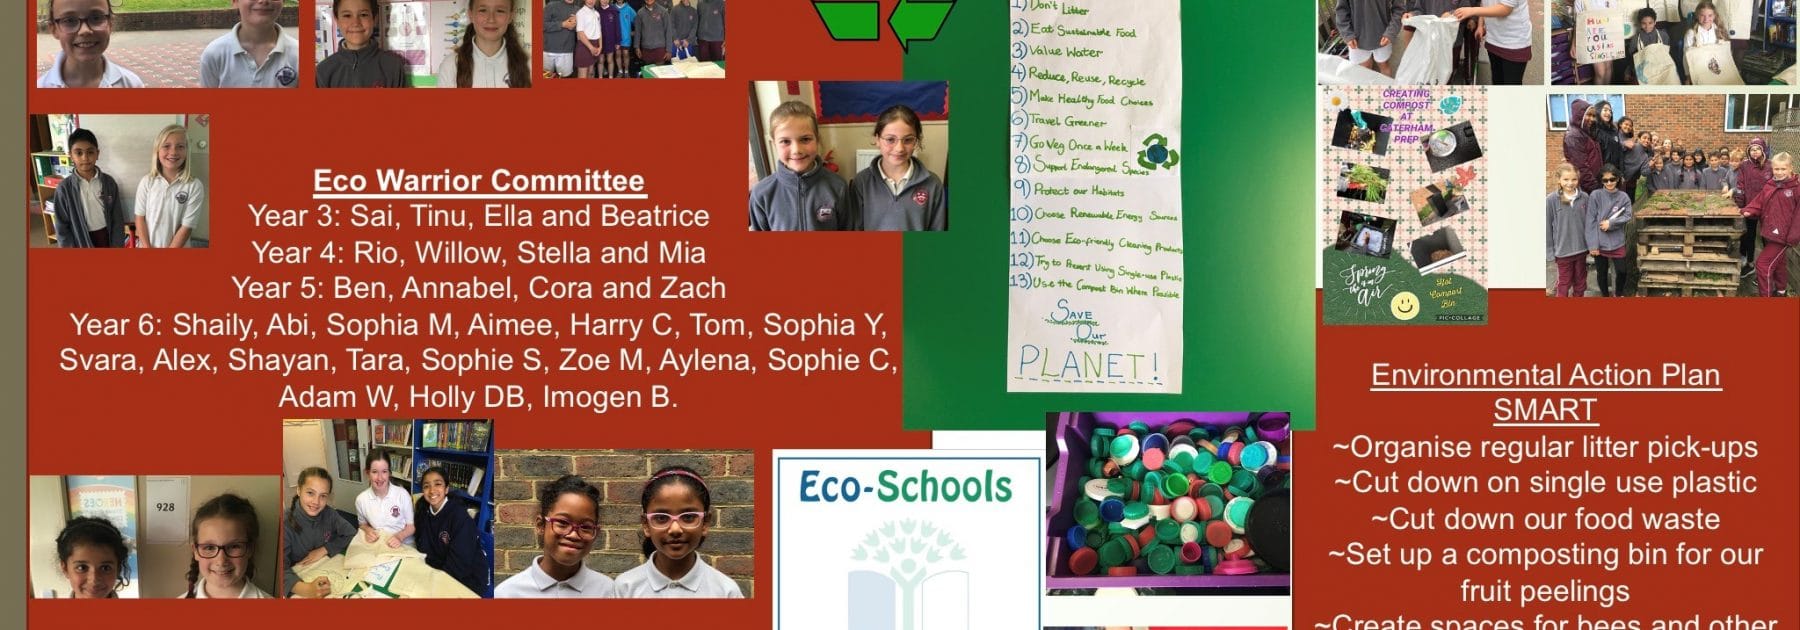 Eco Schools Silver Award